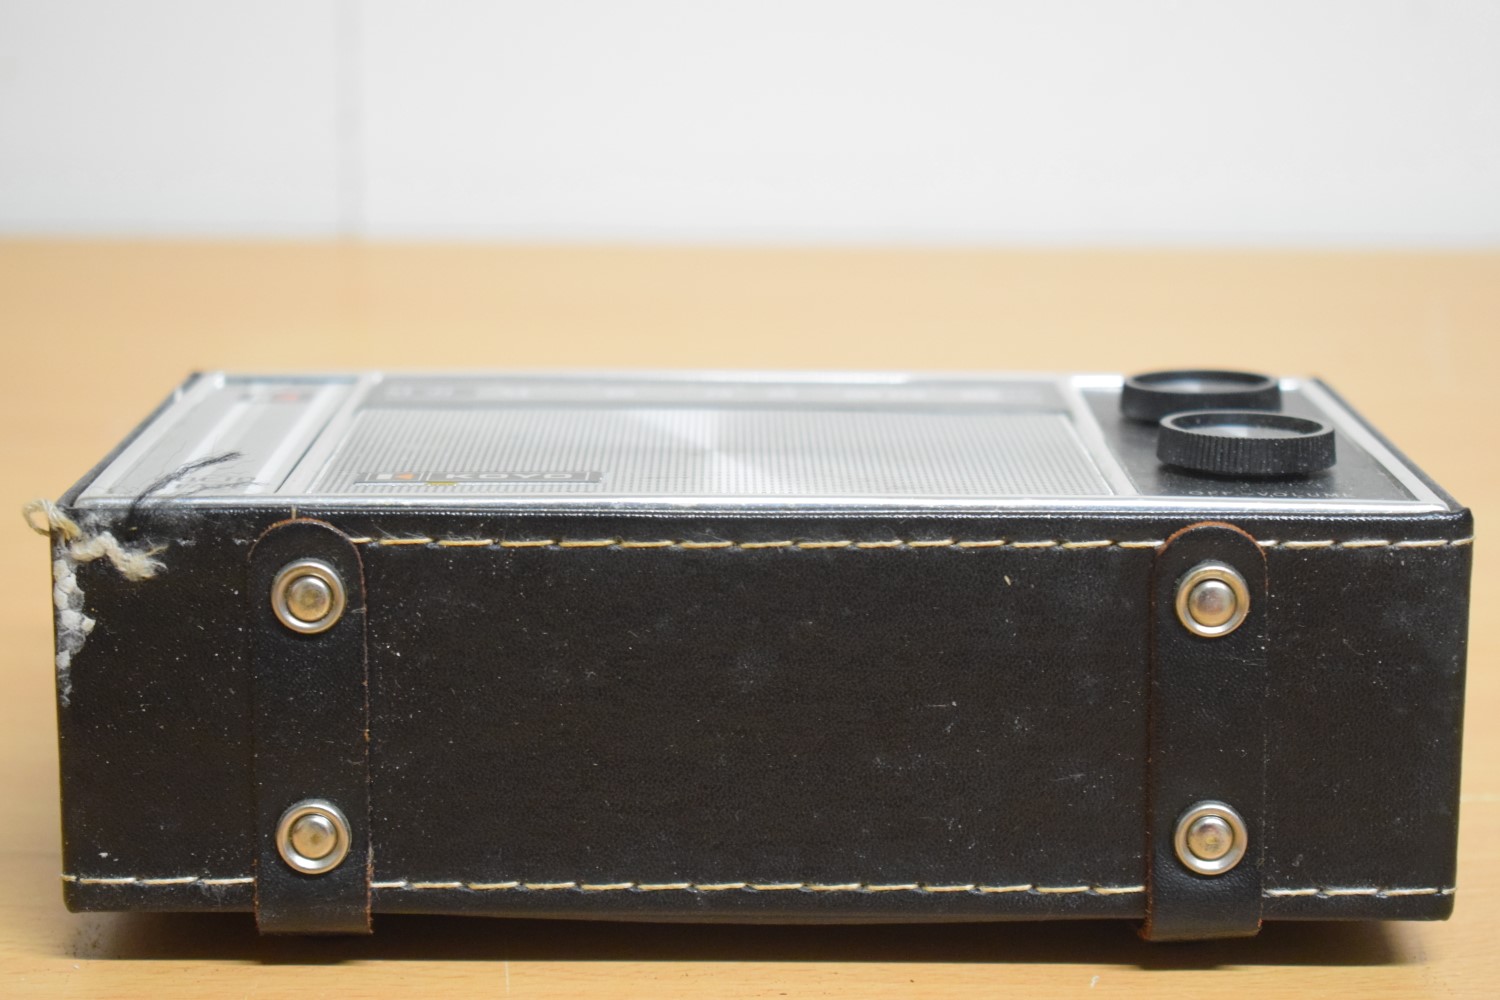 Koyo MO11 Transistor Radio – In der Originalverpackung